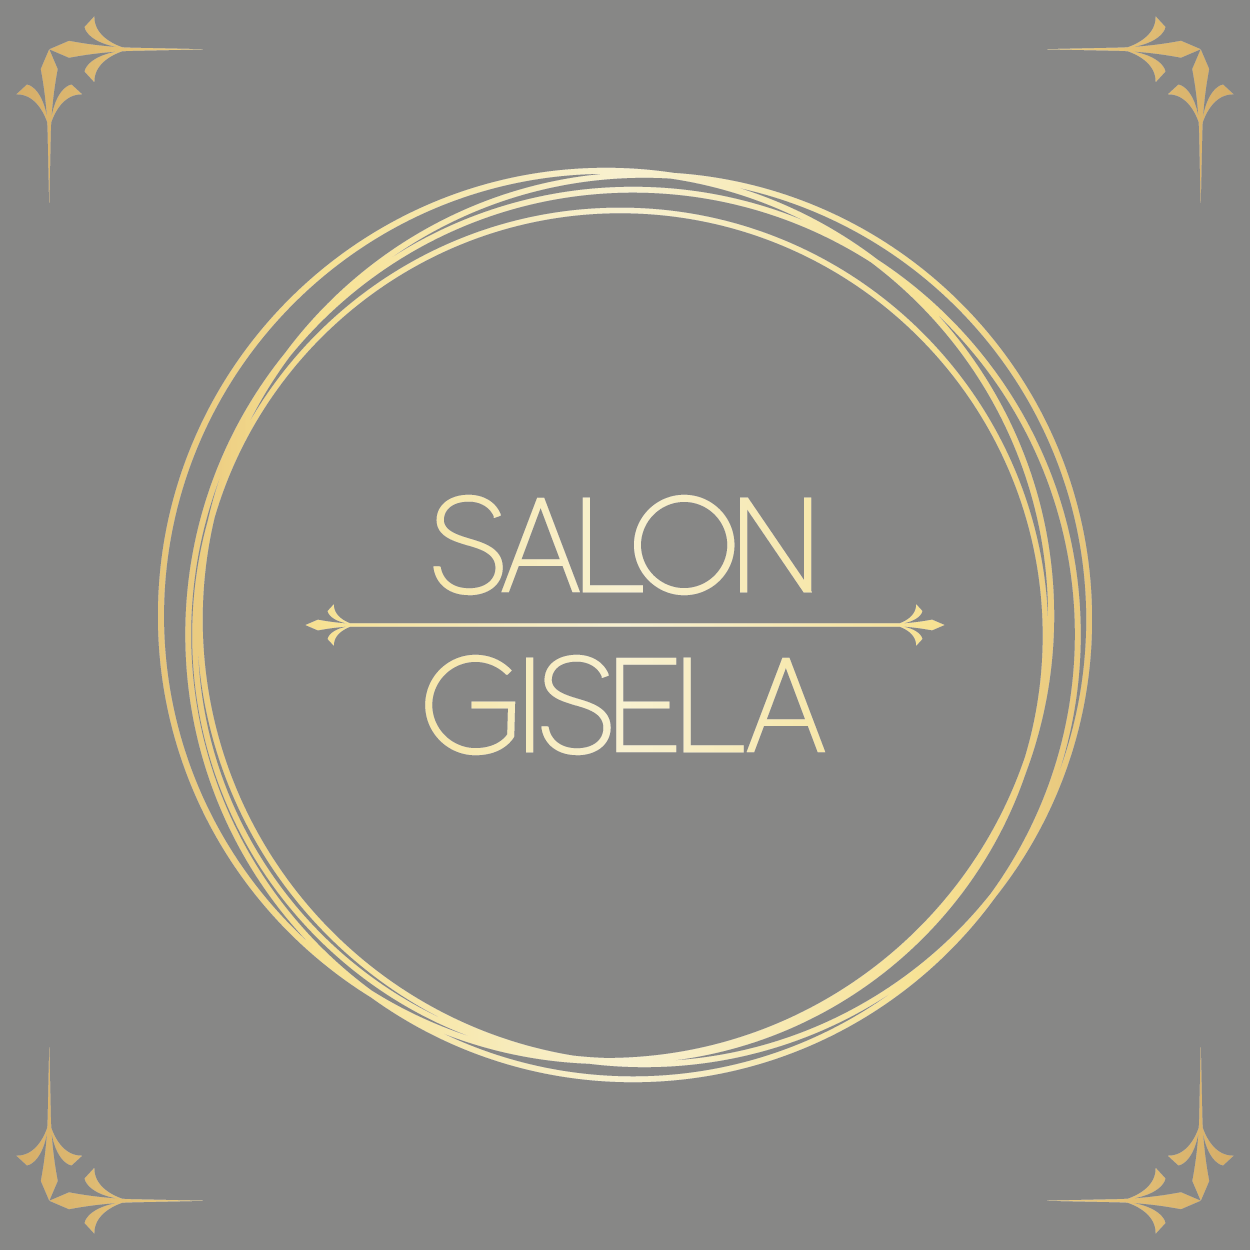 Salon Gisela